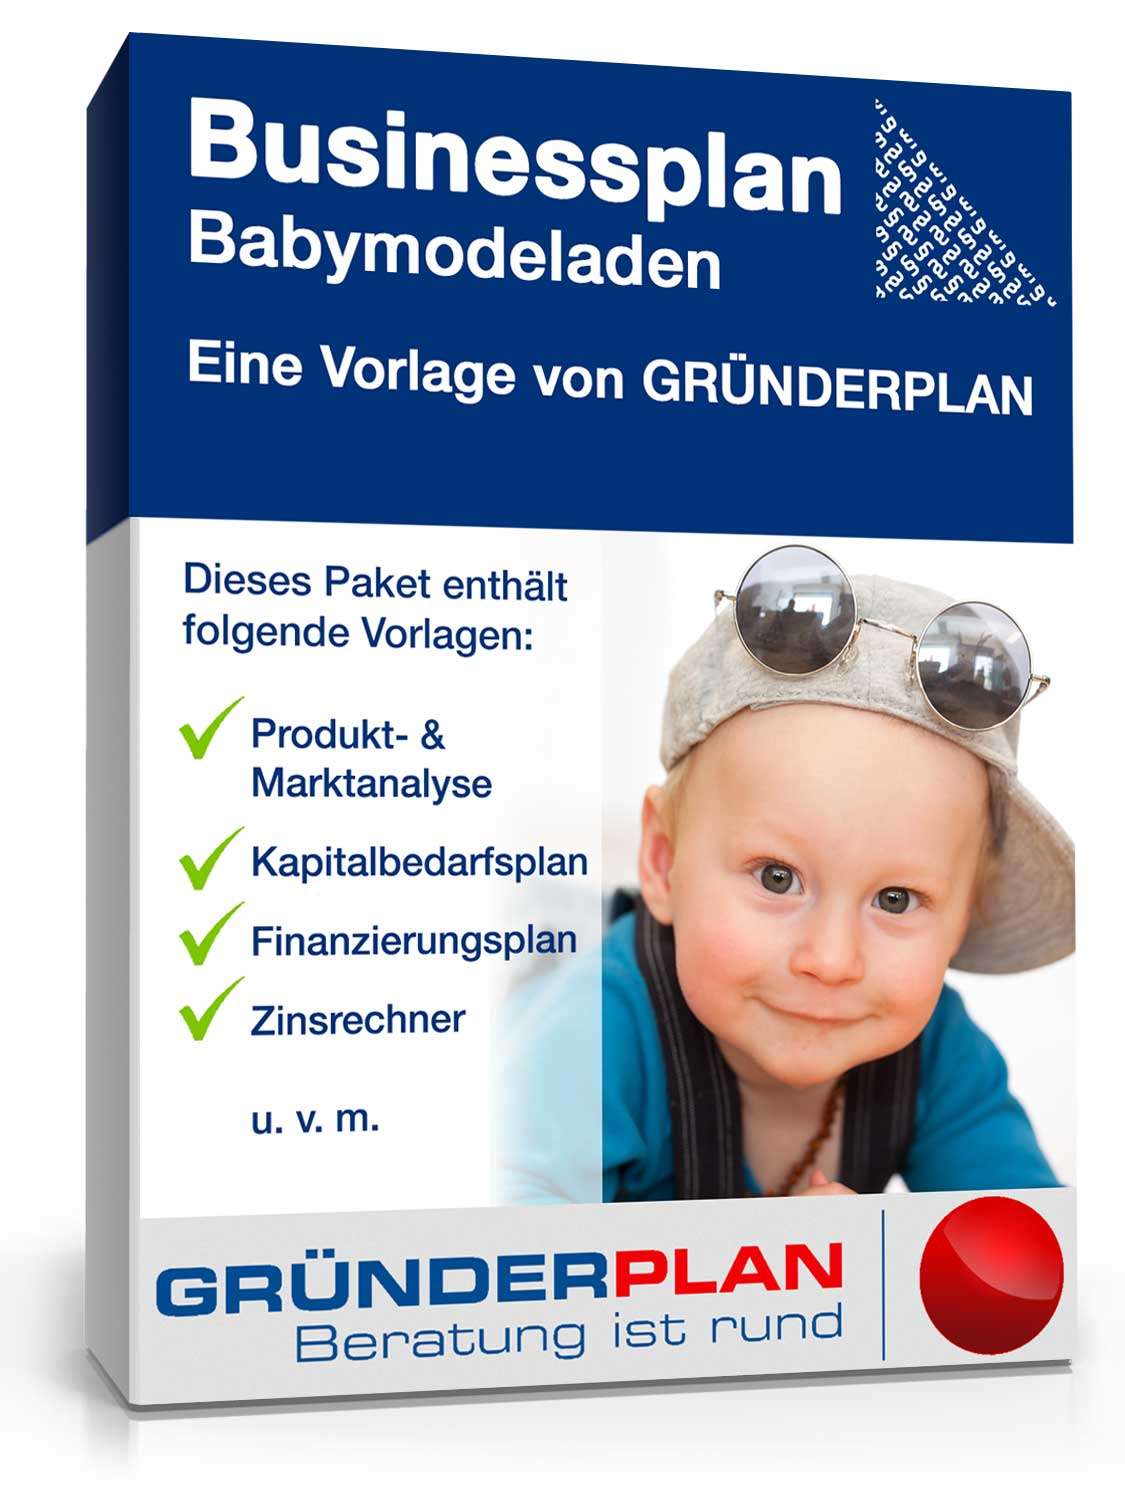 Hauptbild des Produkts: Businessplan Babymodeladen von Gründerplan